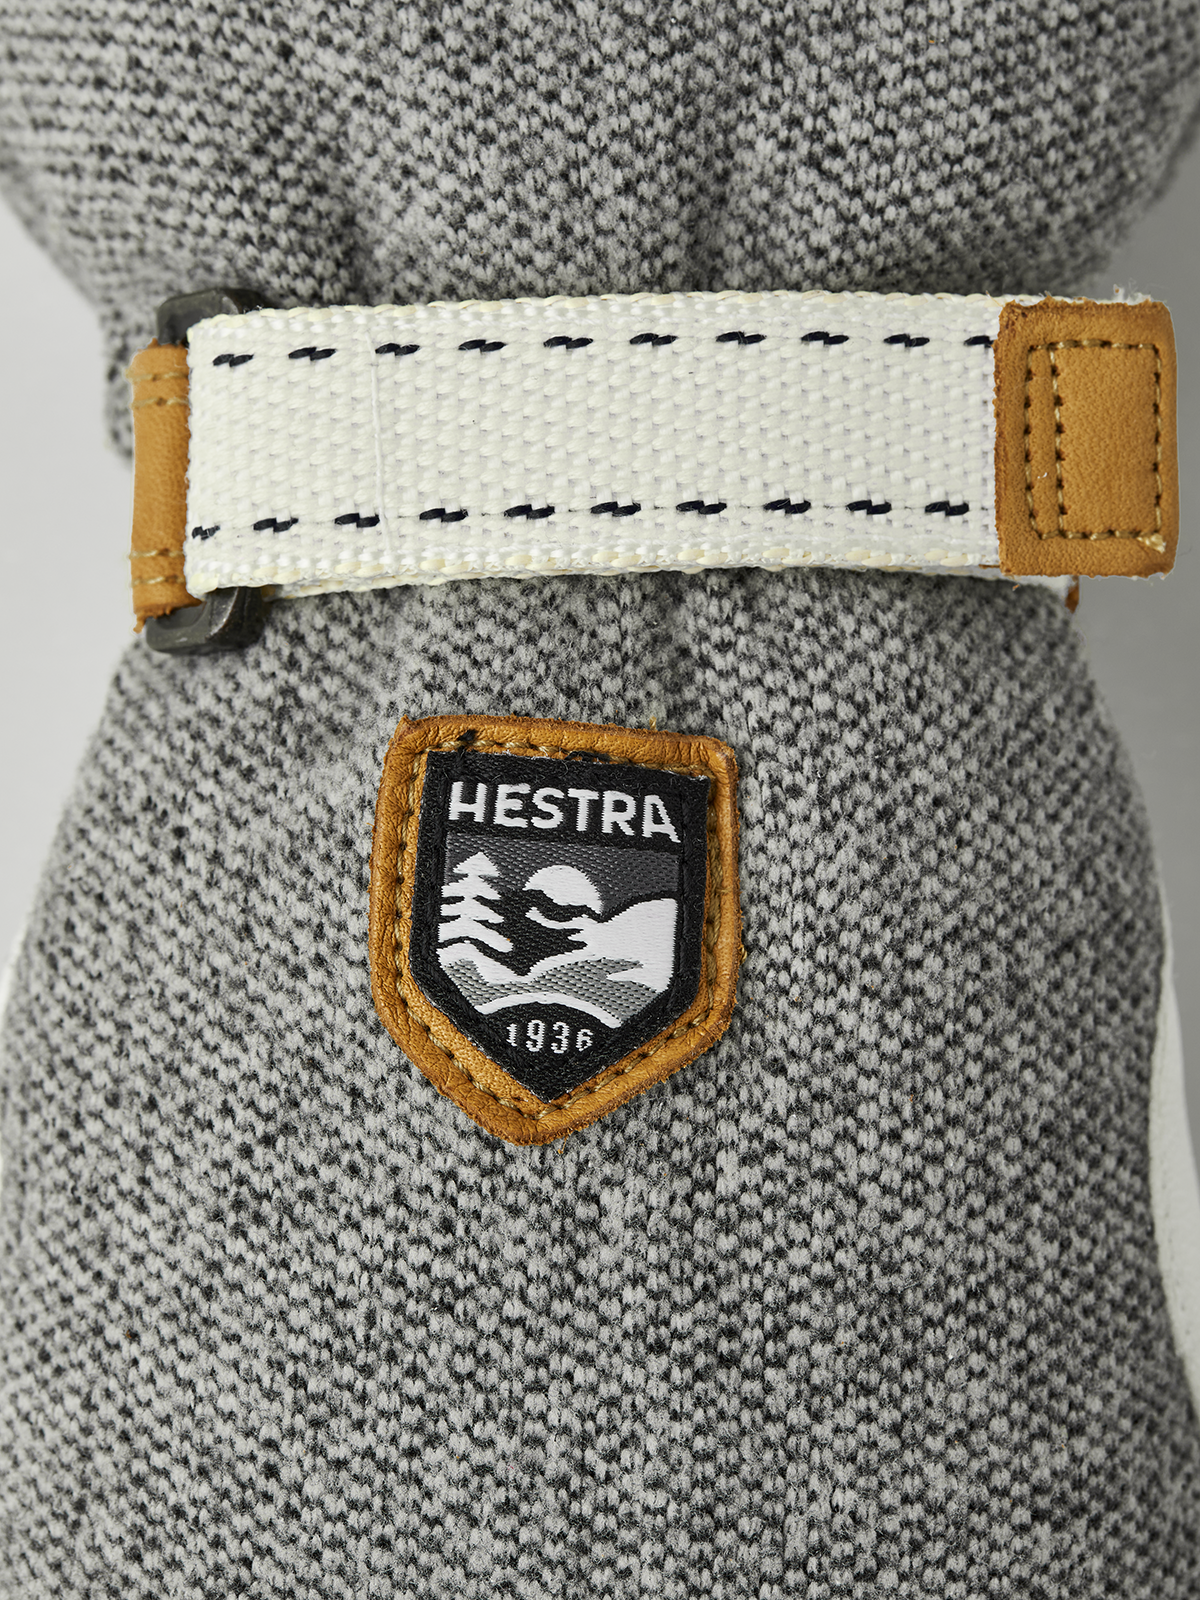 Hestra Windstopper Tour - 5 finger Natural/grey